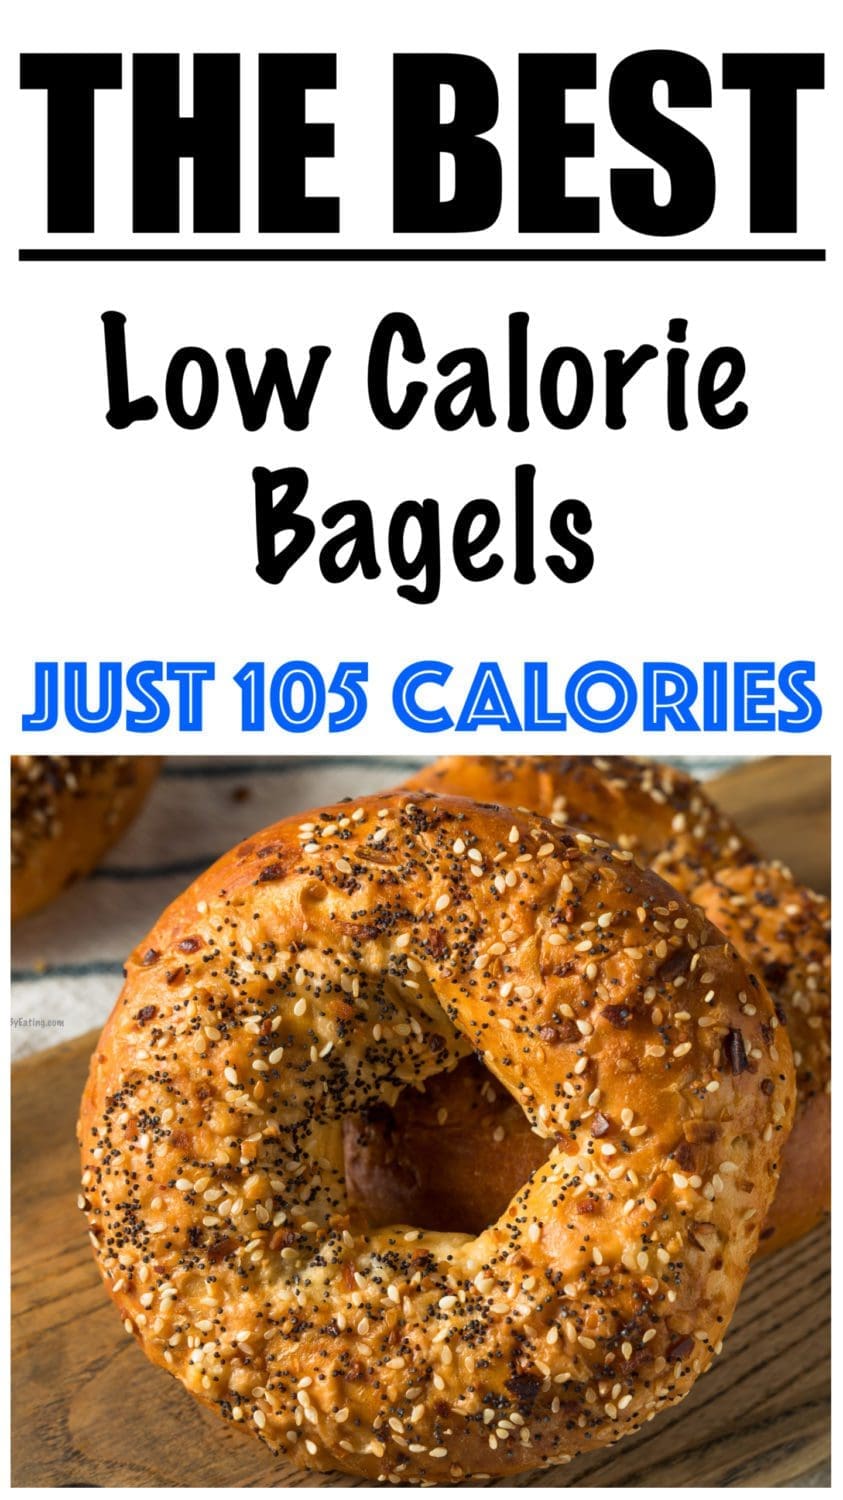 Low Calorie Bagels